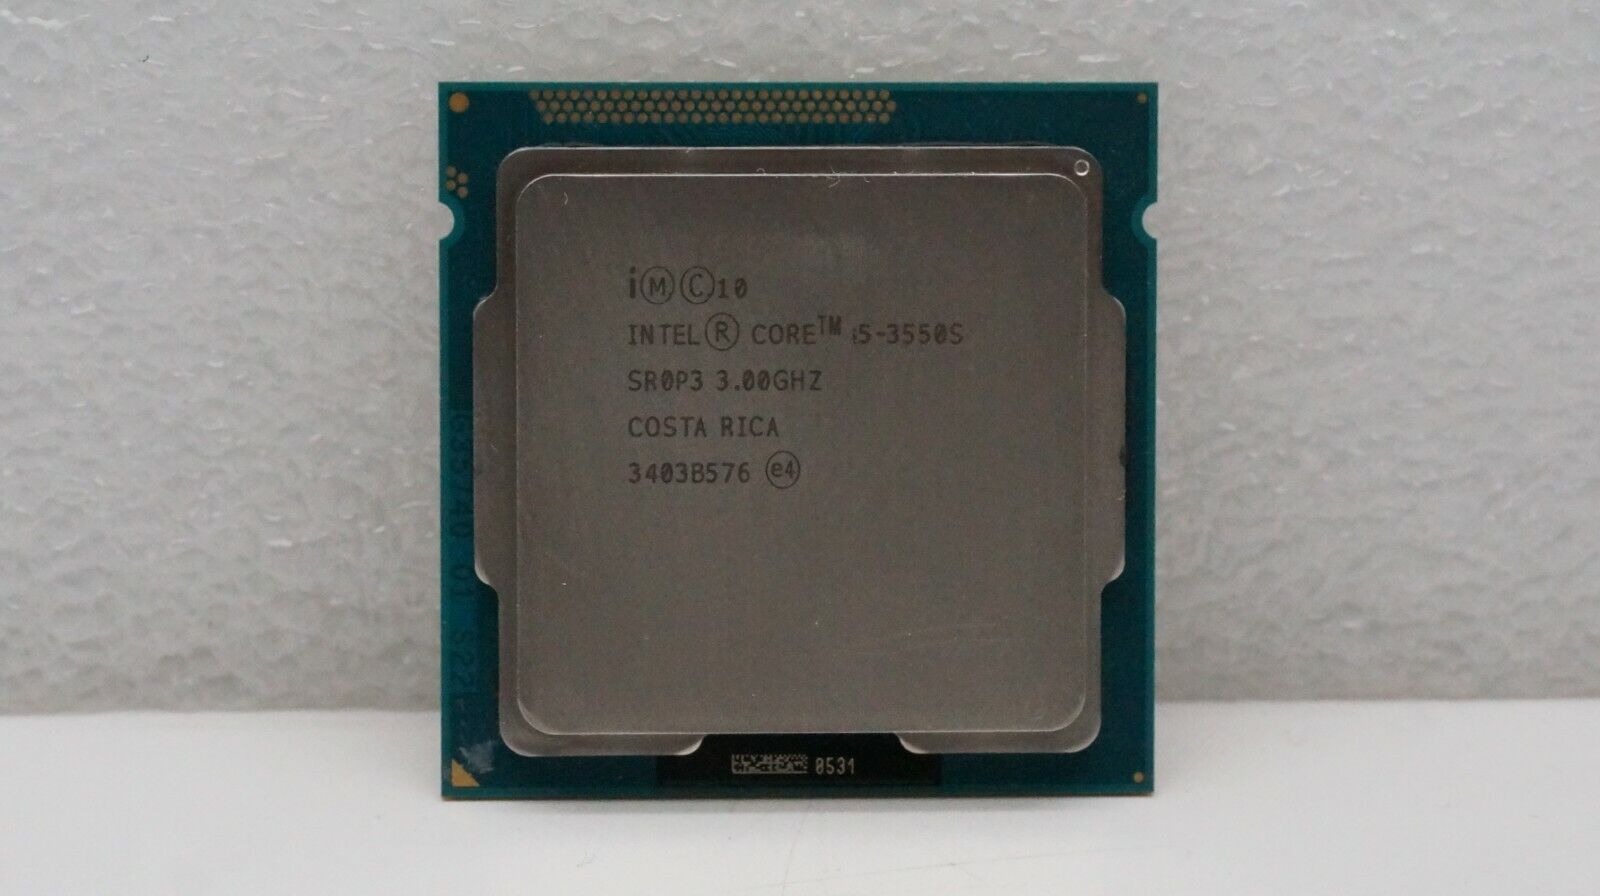 Intel Core i5-3550S 3.0GHz 6MB/5 GT/s SR0P3  LGA 1155 Processor